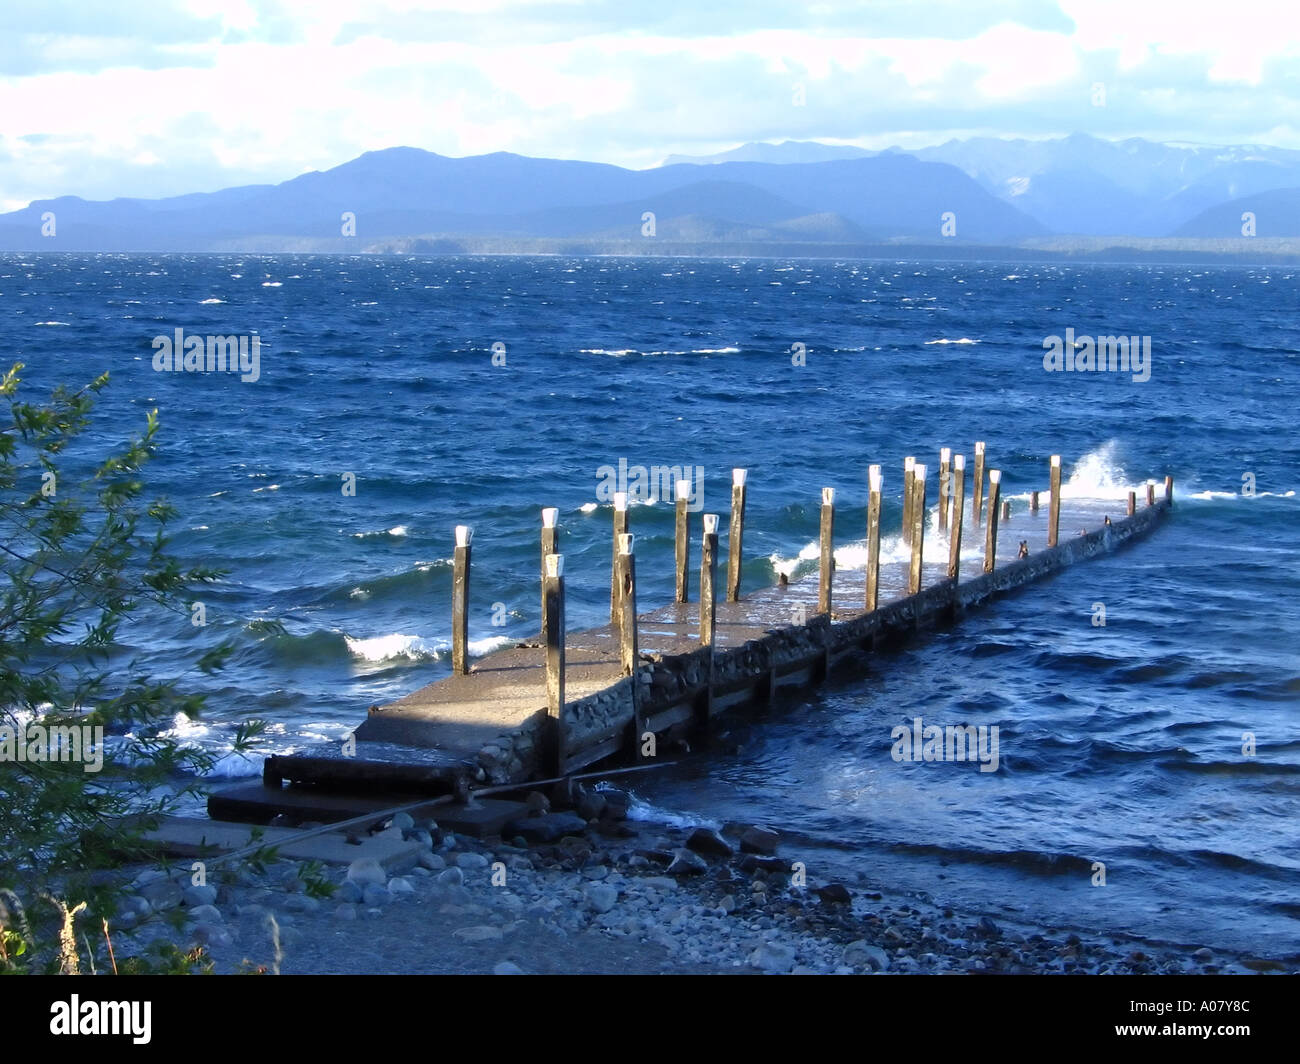 lago Nahuel Huapi, lake in San Carlos de Bariloche, Patagonia, Argentina Stock Photo